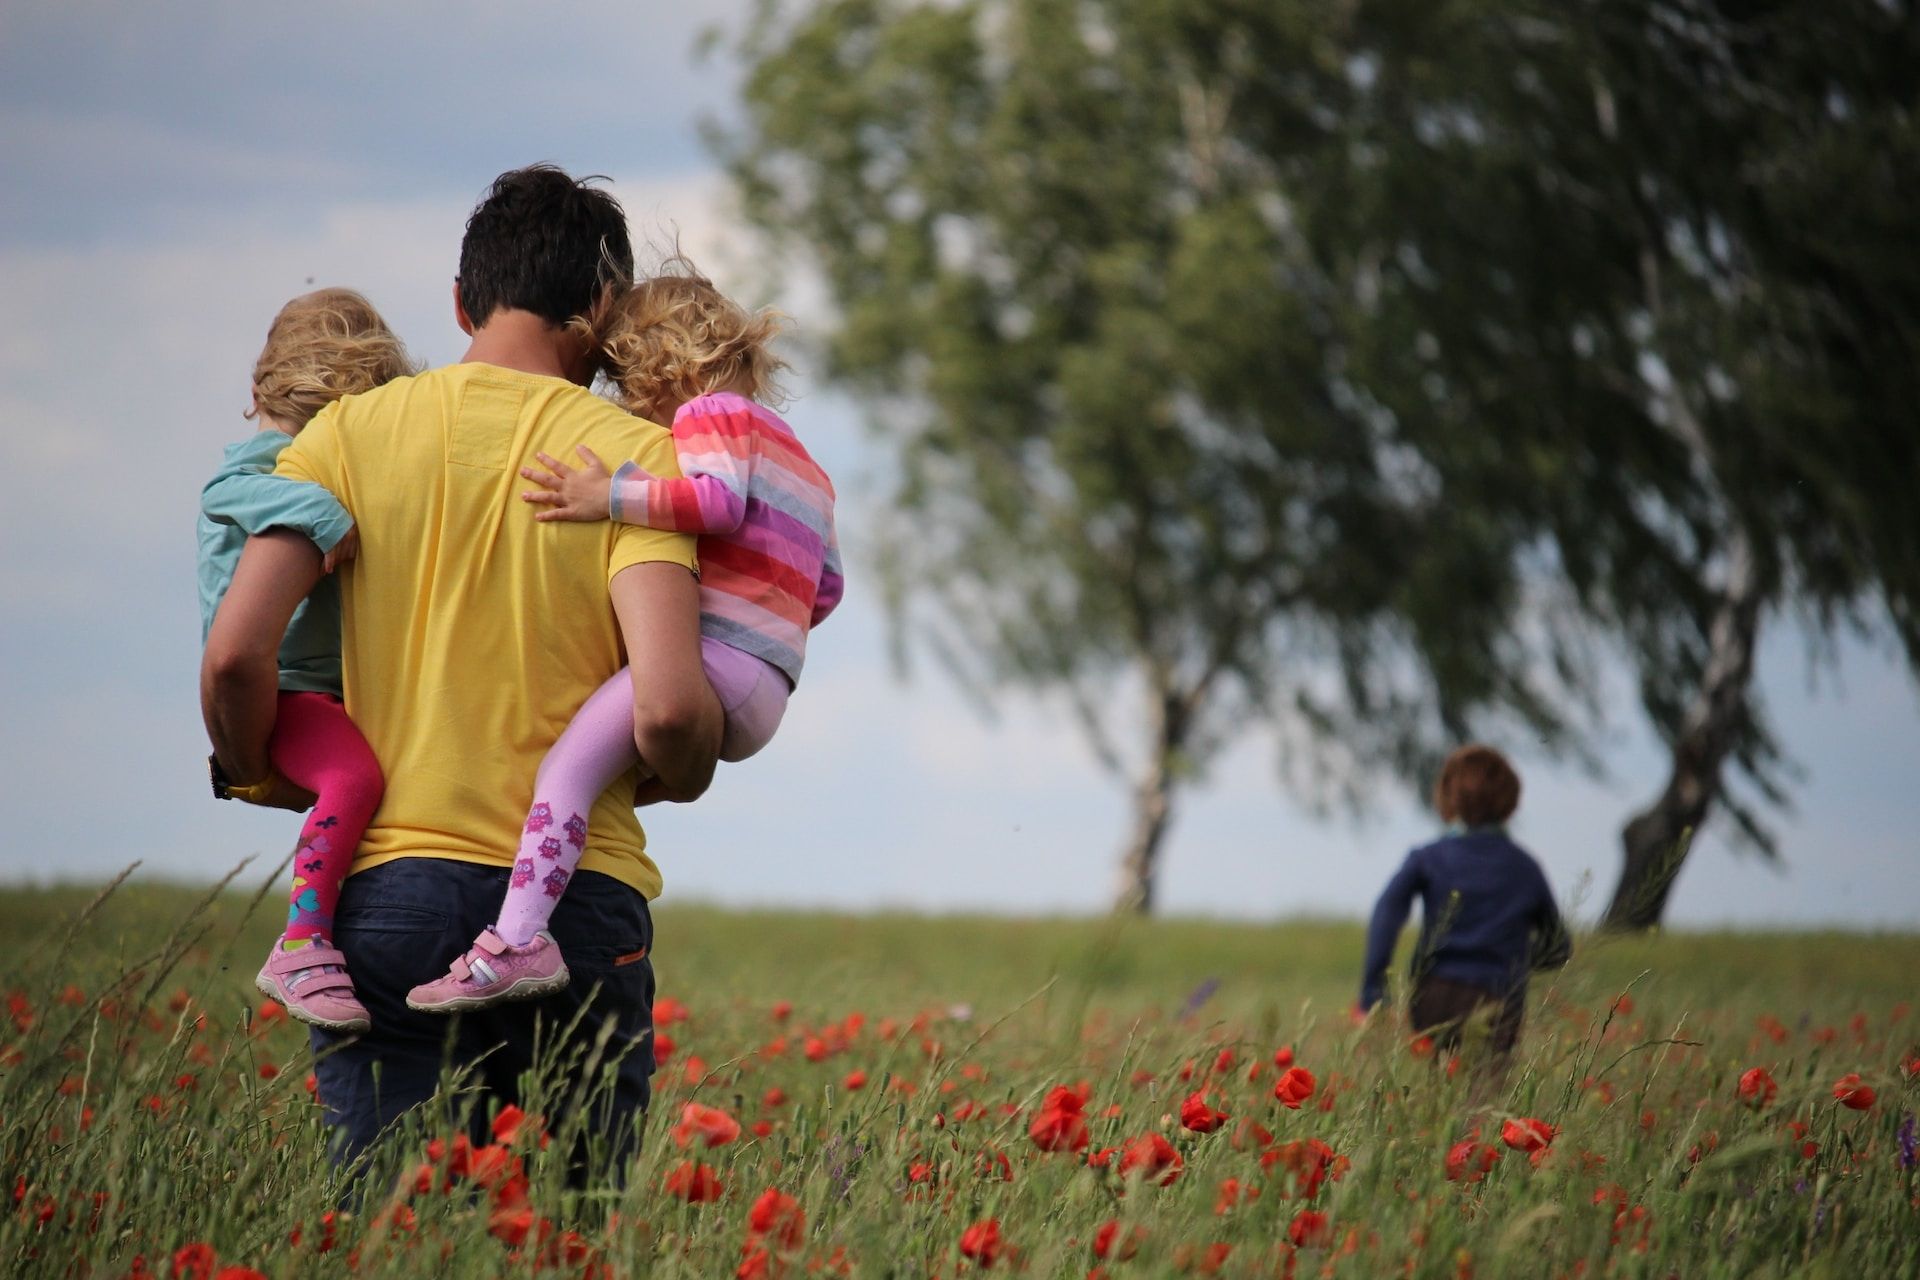 Un père avec deux enfants dan sles bras suivant un troième enfant, dans un champ - Photo by Juliane Liebermann on https://unsplash.com/photos/O-RKu3Aqnsw